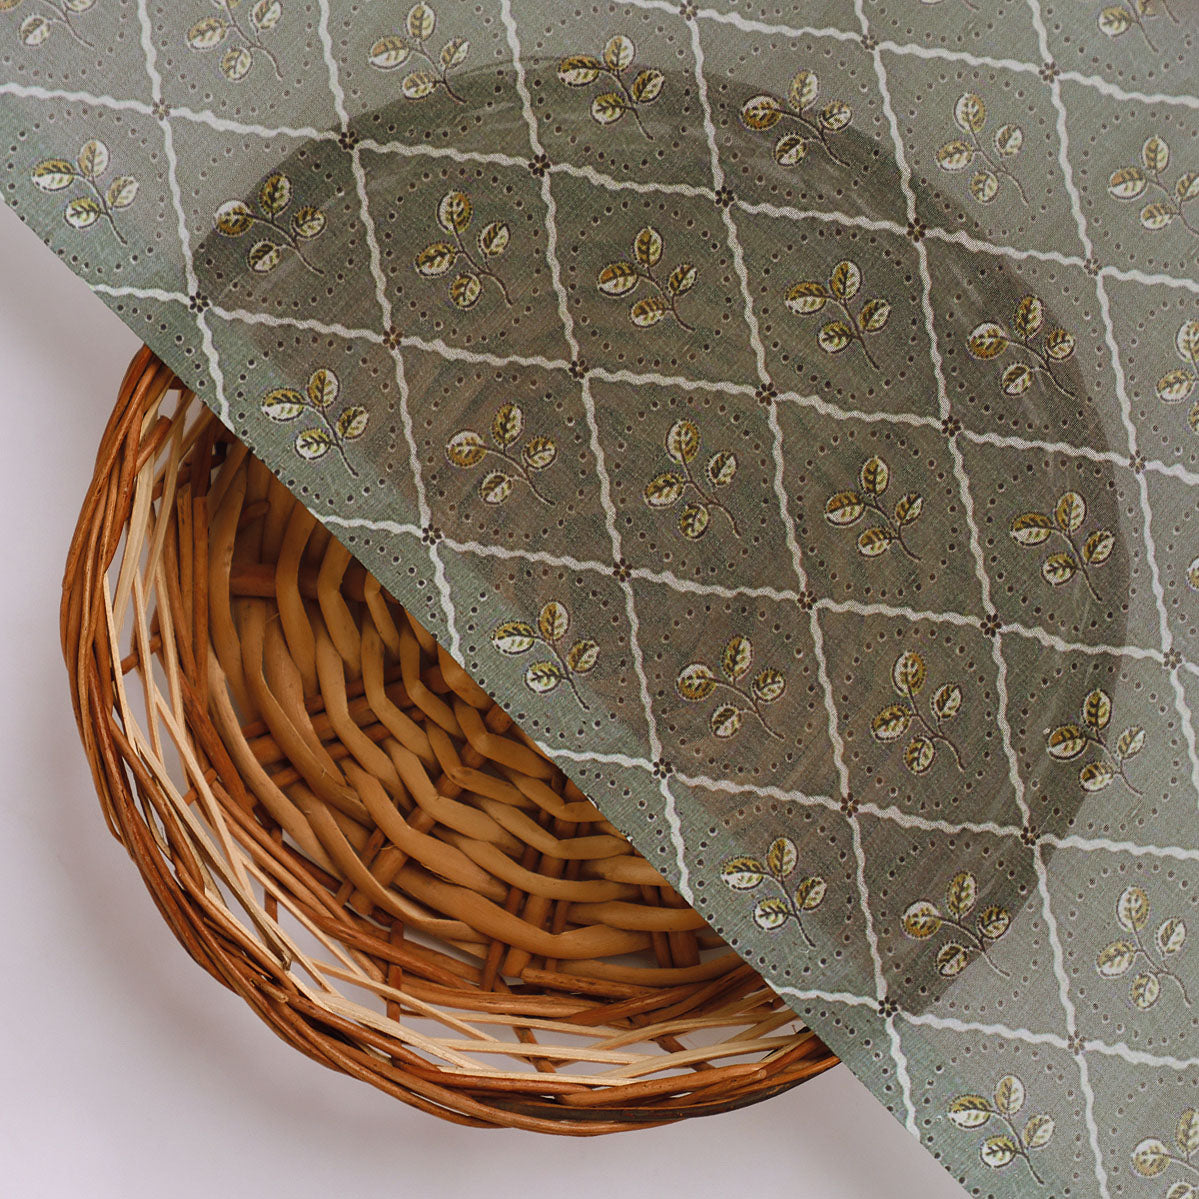 Rhombus Inside Entire Leaf Digital Printed Fabric - Weightless